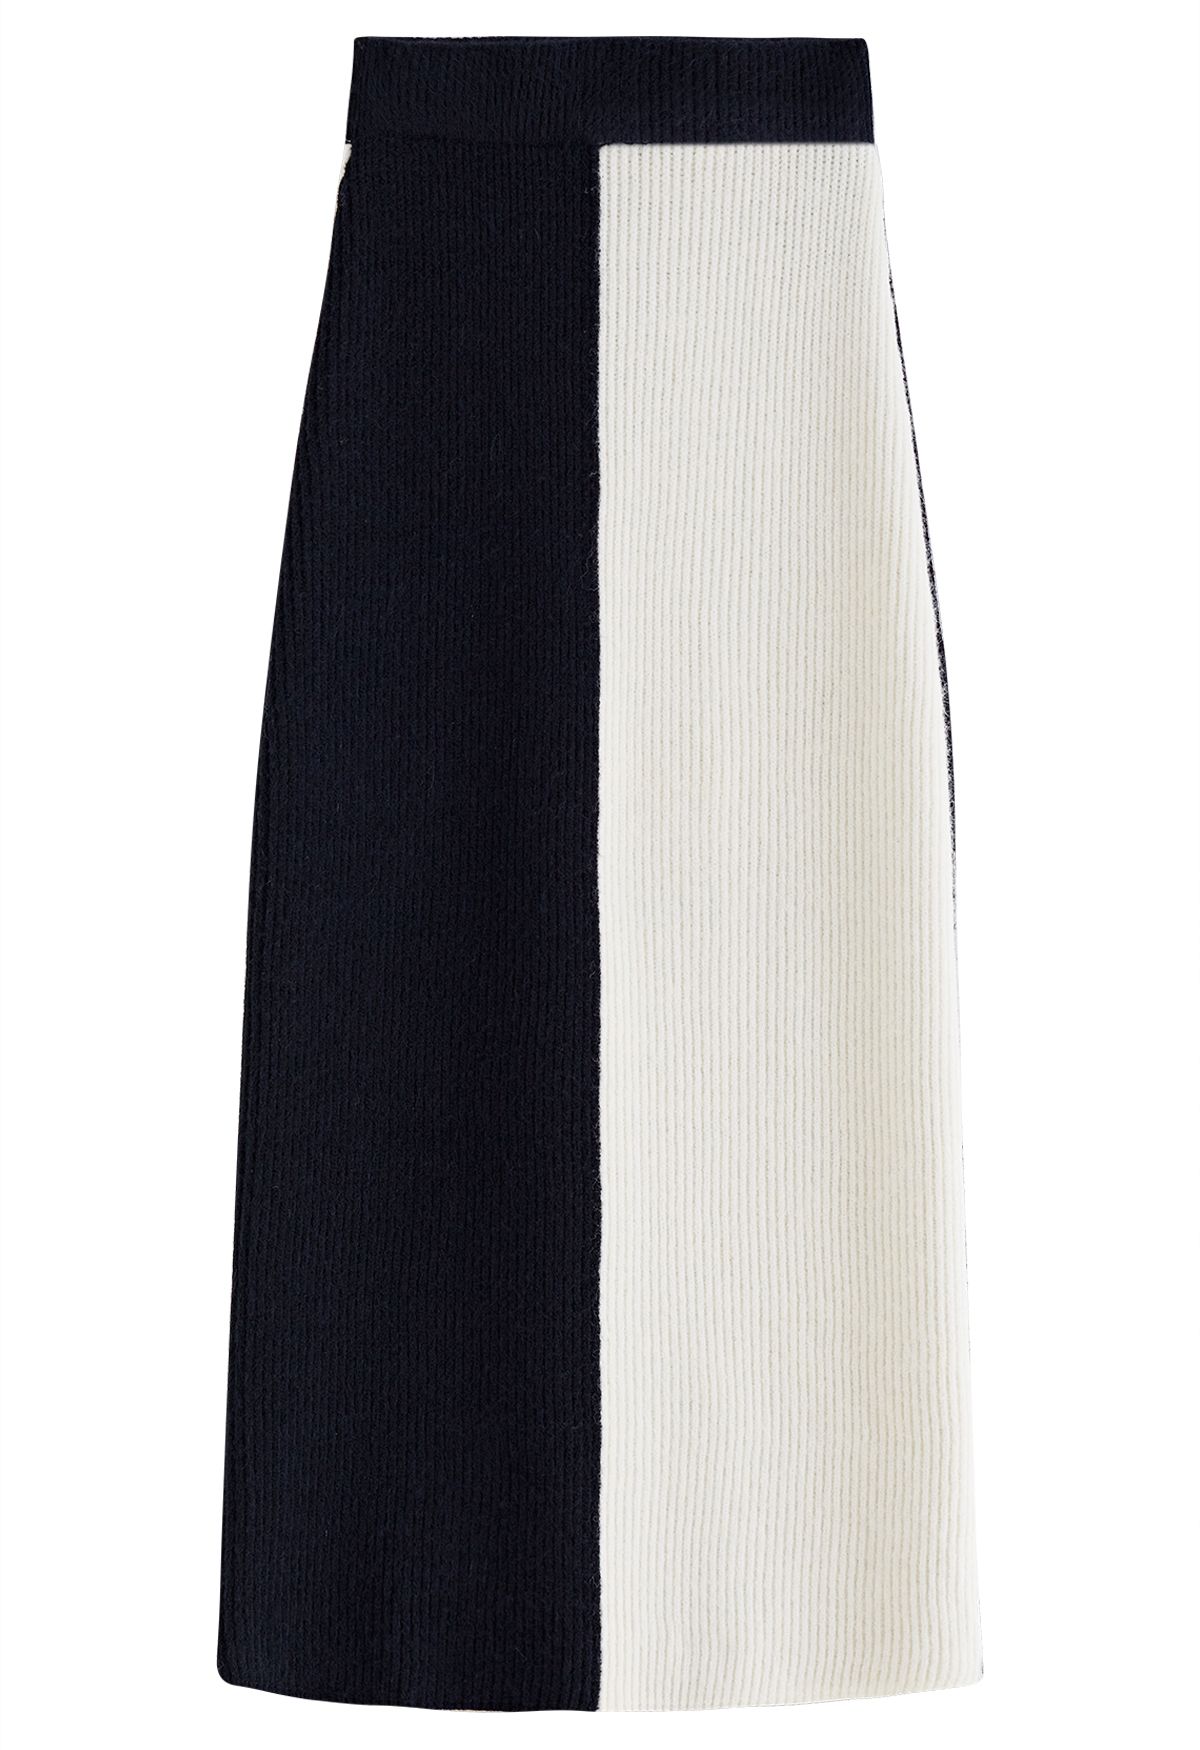 Conjunto de jersey extragrande de punto acanalado bicolor y falda lápiz en negro